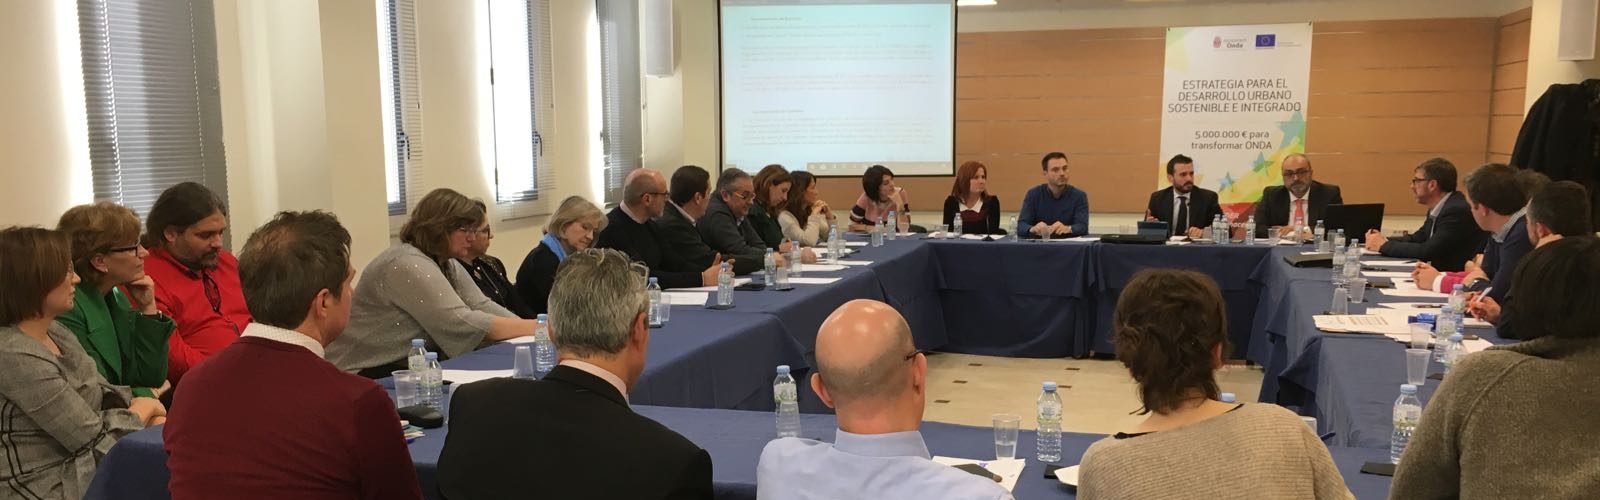 Benicarló participa en la I Jornada d’Implementació de l’Estratègia DUSI en Municipis de Castelló